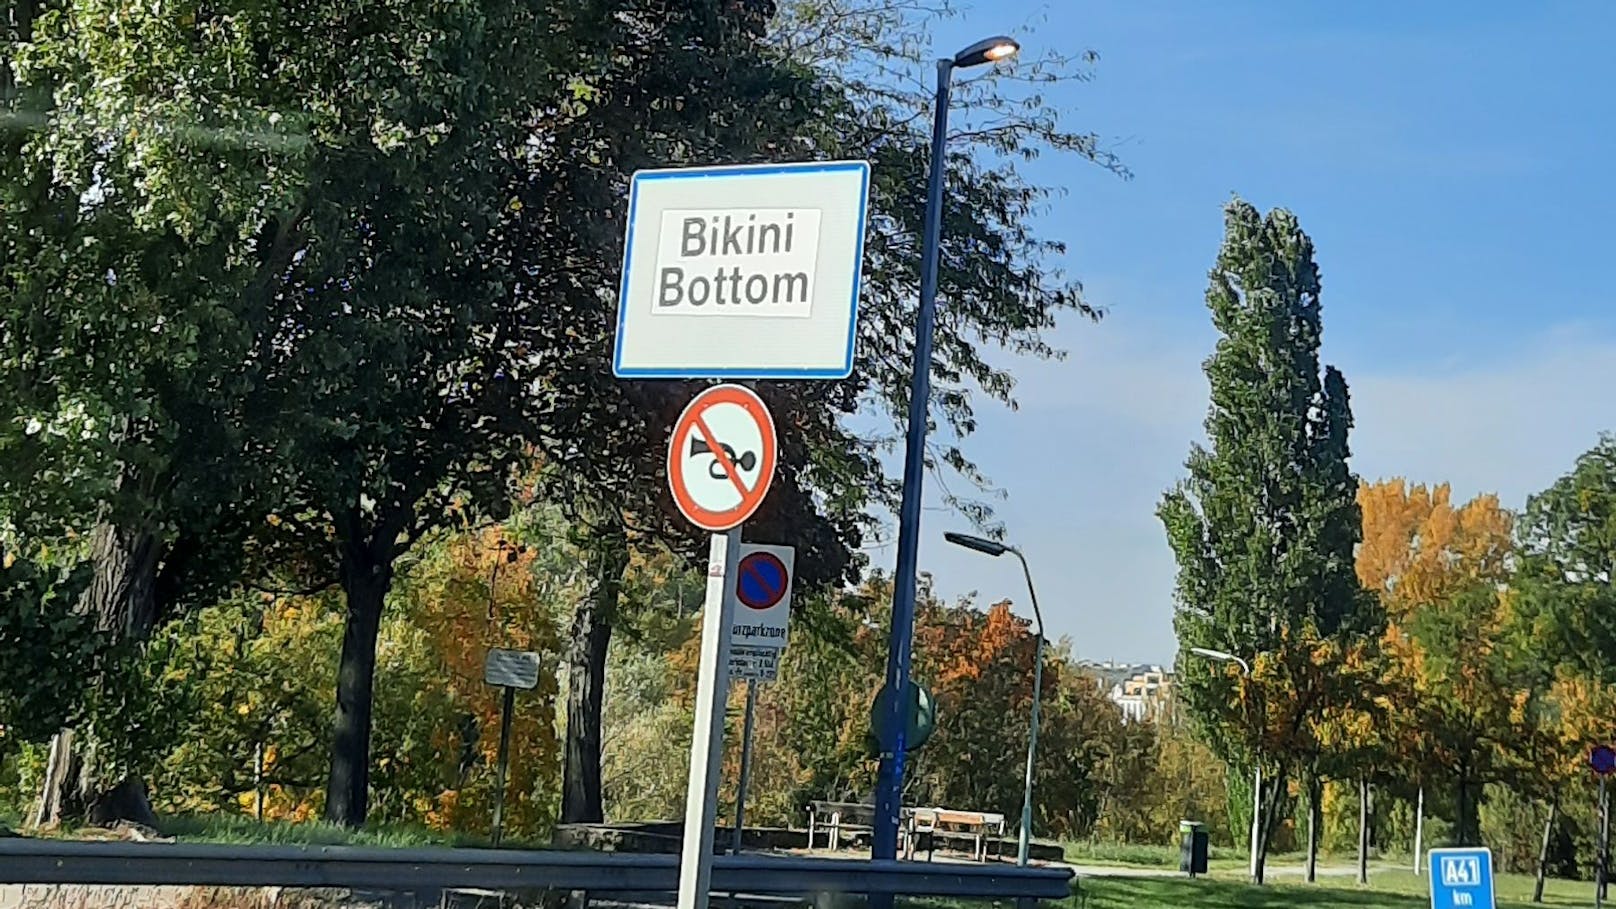 Einfahrt nach Wien oder doch Bikini Bottom?